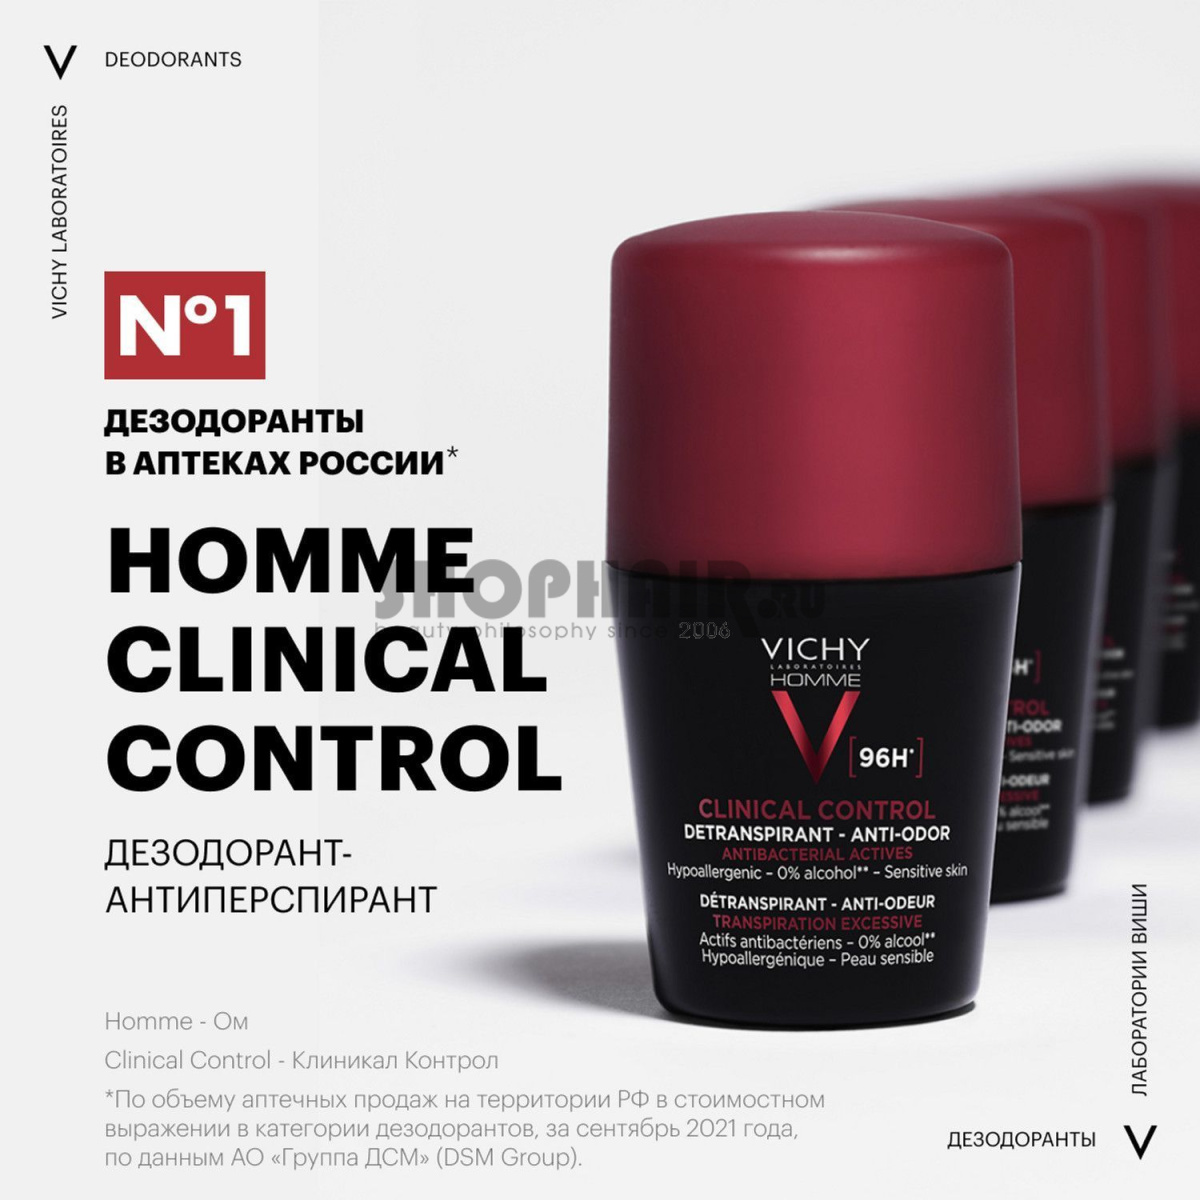 Vichy Homme Clinical Control - Дезодорант-антиперспирант 96 ч 50 мл Vichy (Франция) купить по цене 1 299 руб.